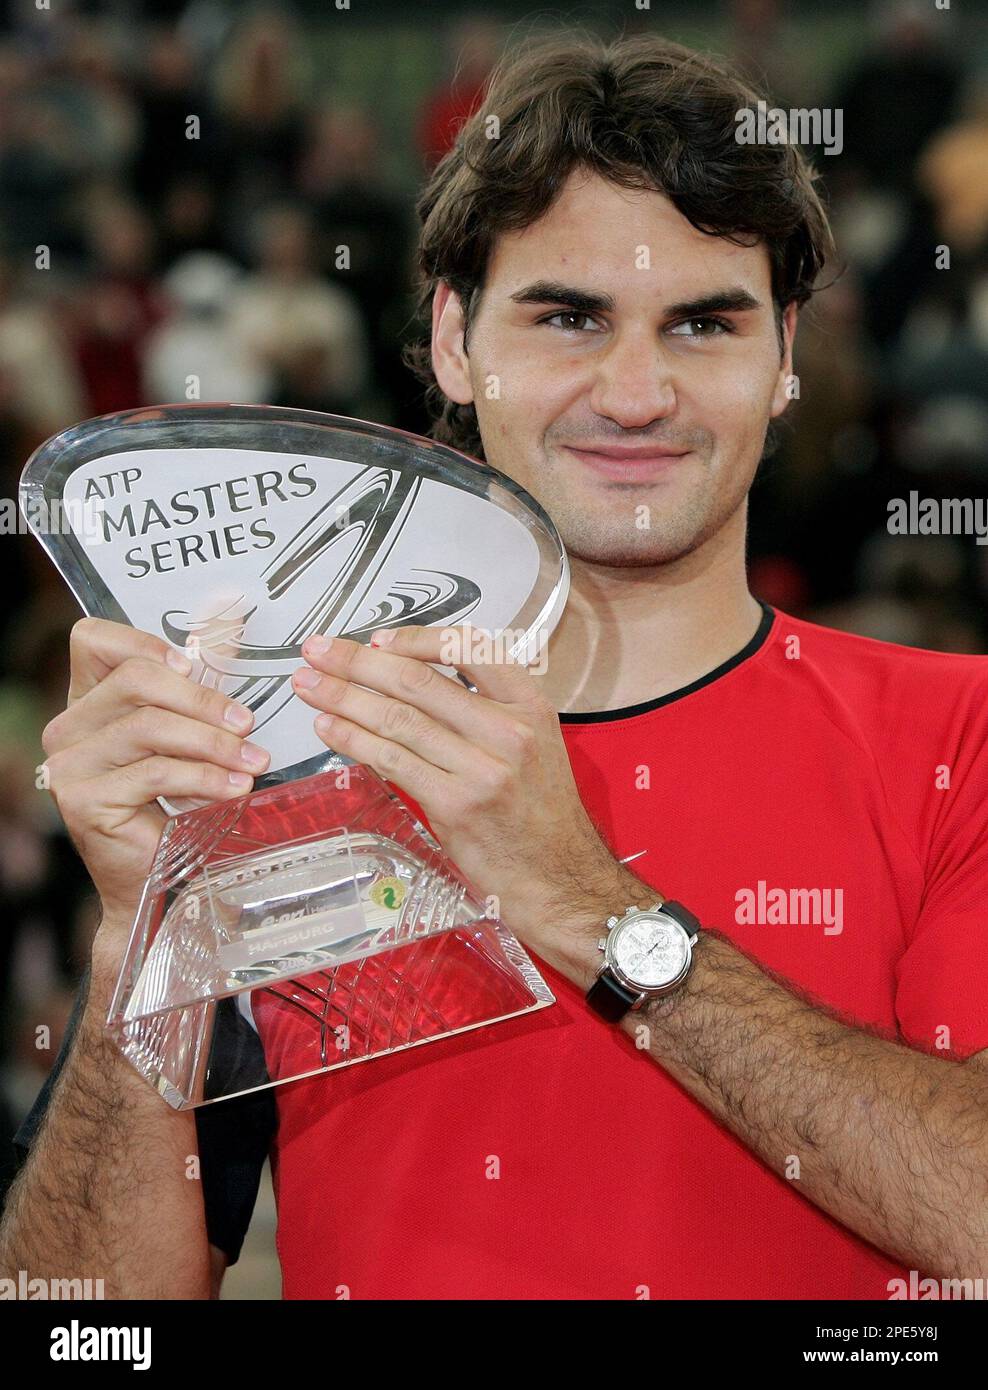 Der Tennisspieler Roger Federer aus der Schweiz freut sich am Sonntag, 15.  Mai 2005, nach dem Finalspiel des ATP Masters am Hamburger Rothenbaum, mit  der Trophaee des Turniers. Federer gewann das Spiel